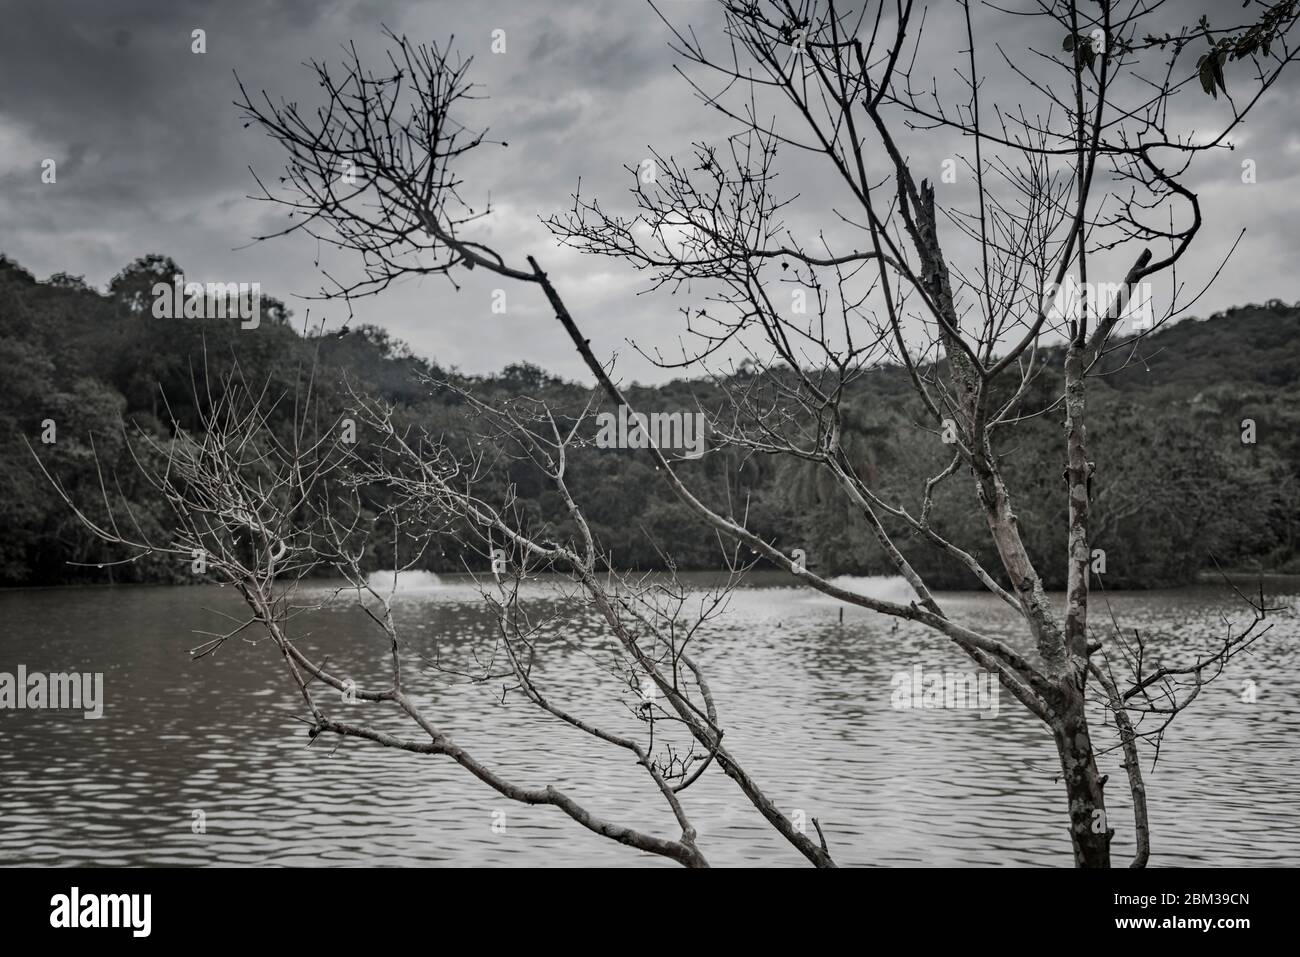 In primo piano si vede l'albero senza foglie; sullo sfondo, un lago circondato da boschi in una giornata nuvolosa Foto Stock